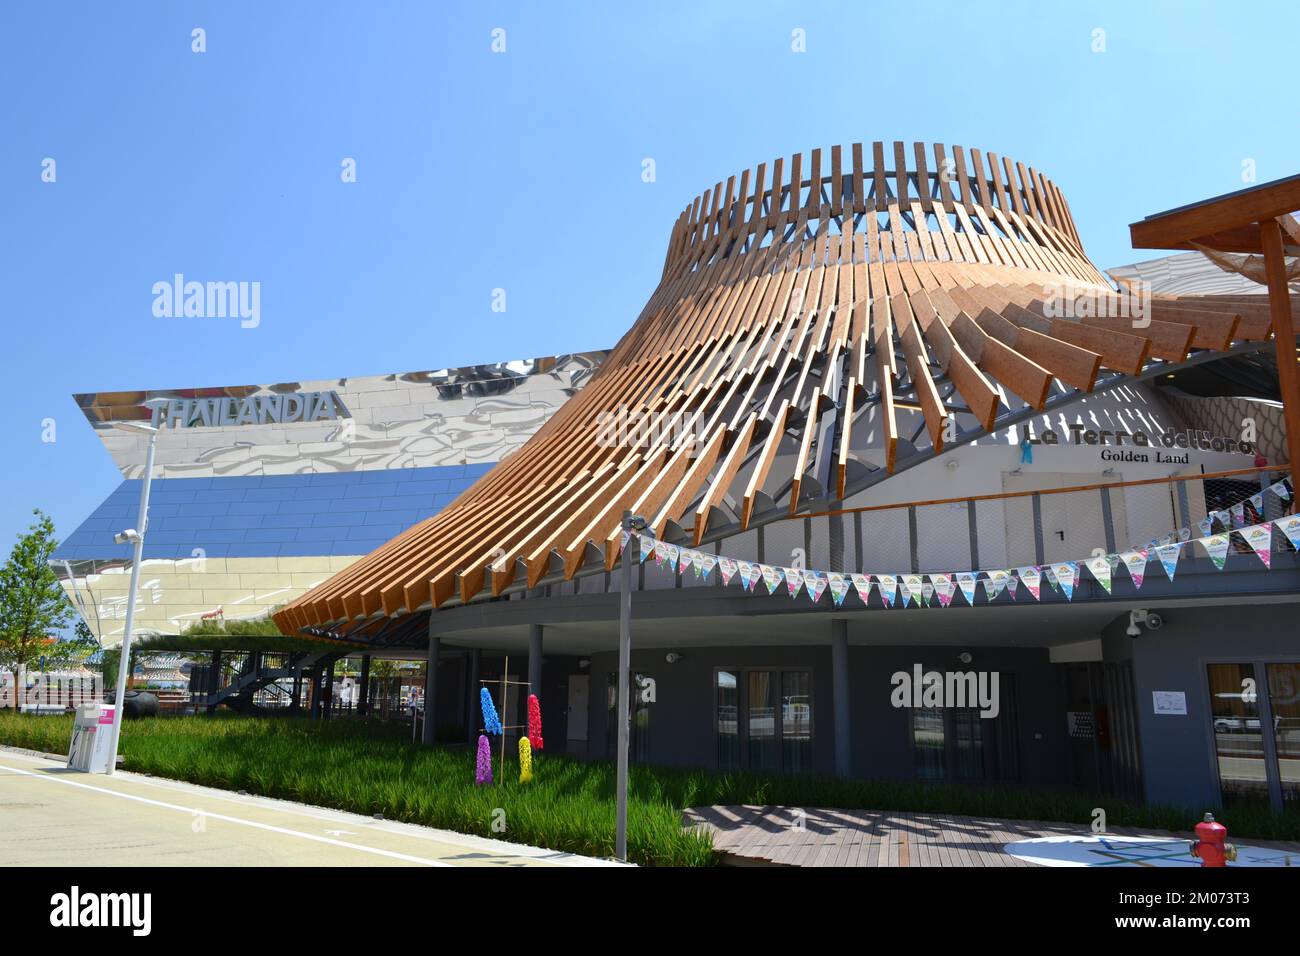 Vue panoramique de la partie extérieure du pavillon thaïlandais de l'EXPO Milano 2015 sous le soleil direct et lumineux. Miroirs réfléchissants géants. Banque D'Images